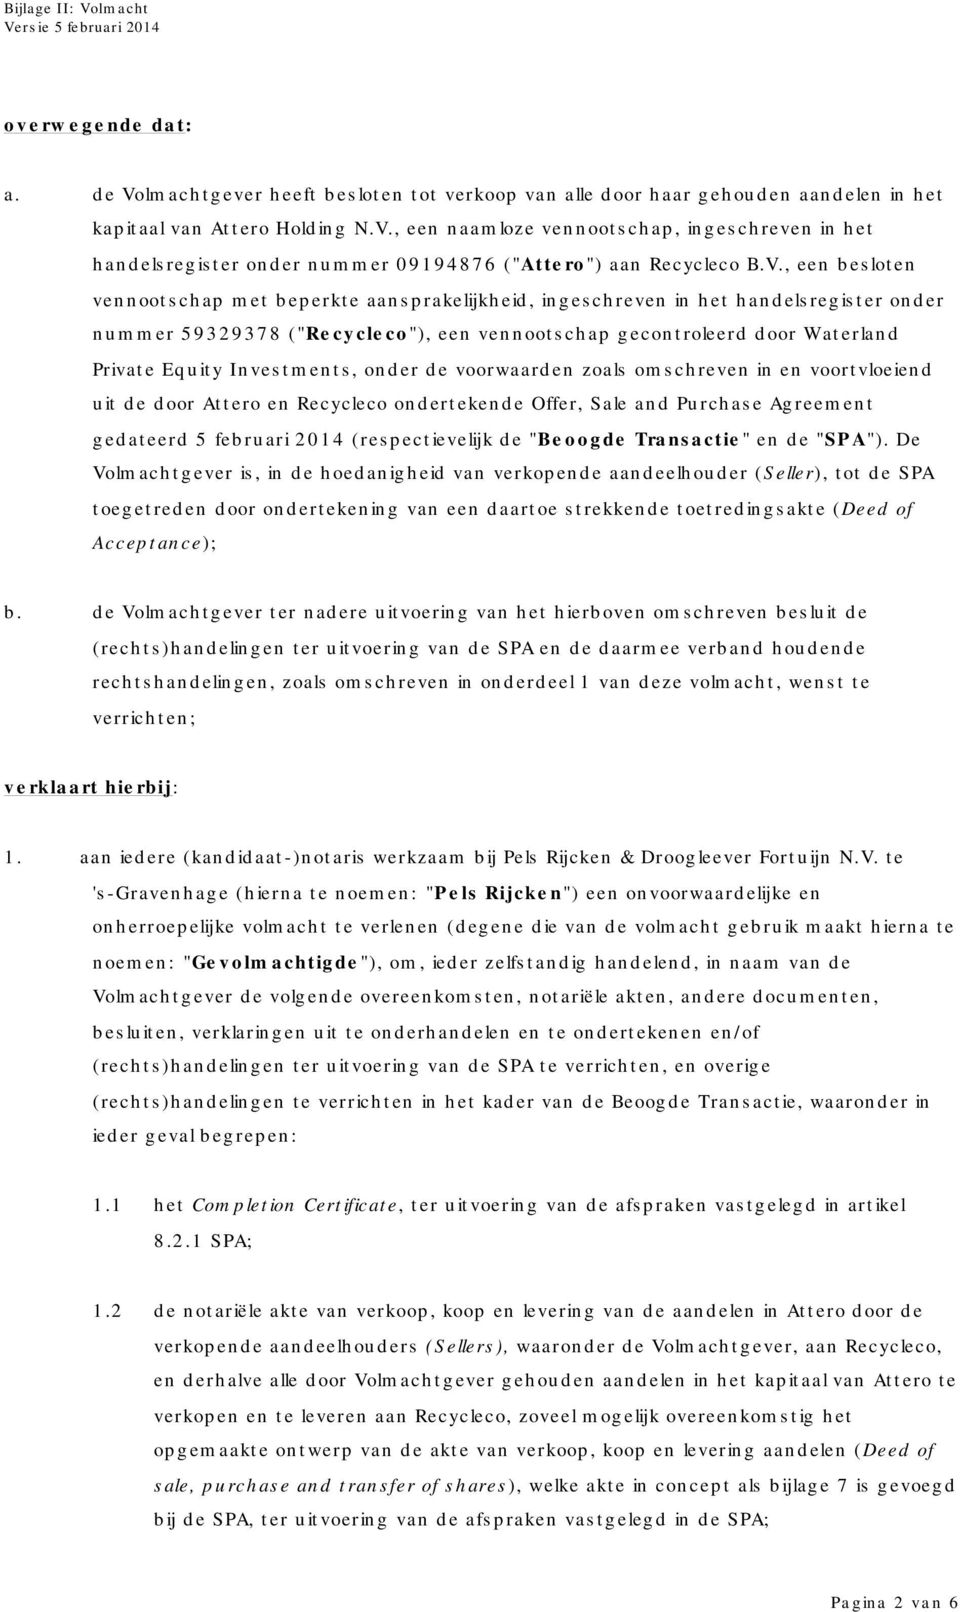 Investments, onder de voorwaarden zoals omschreven in en voortvloeiend uit de door Attero en Recycleco ondertekende Offer, Sale and Purchase Agreement gedateerd 5 februari 2014 (respectievelijk de